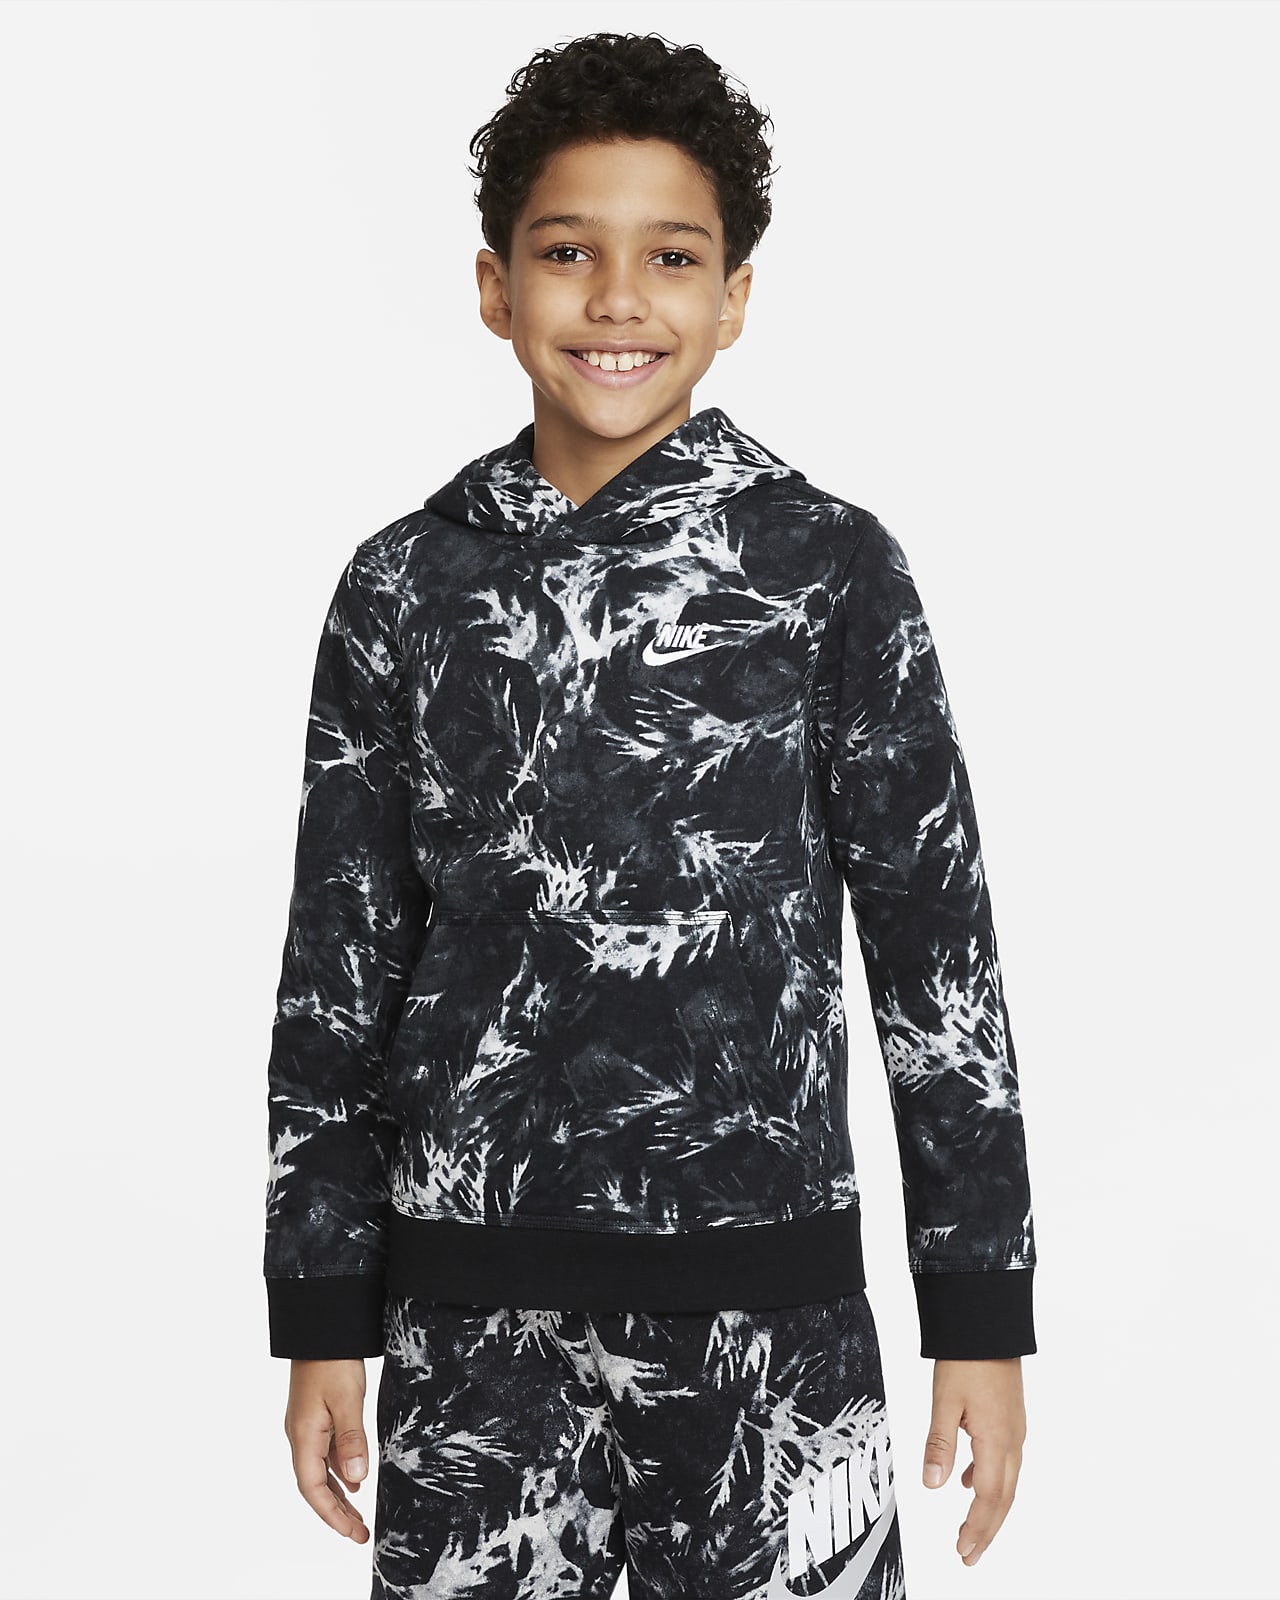 Nike Sportswear Hoodie aus French-Terry-Material mit Print für ältere Kinder (Jungen)